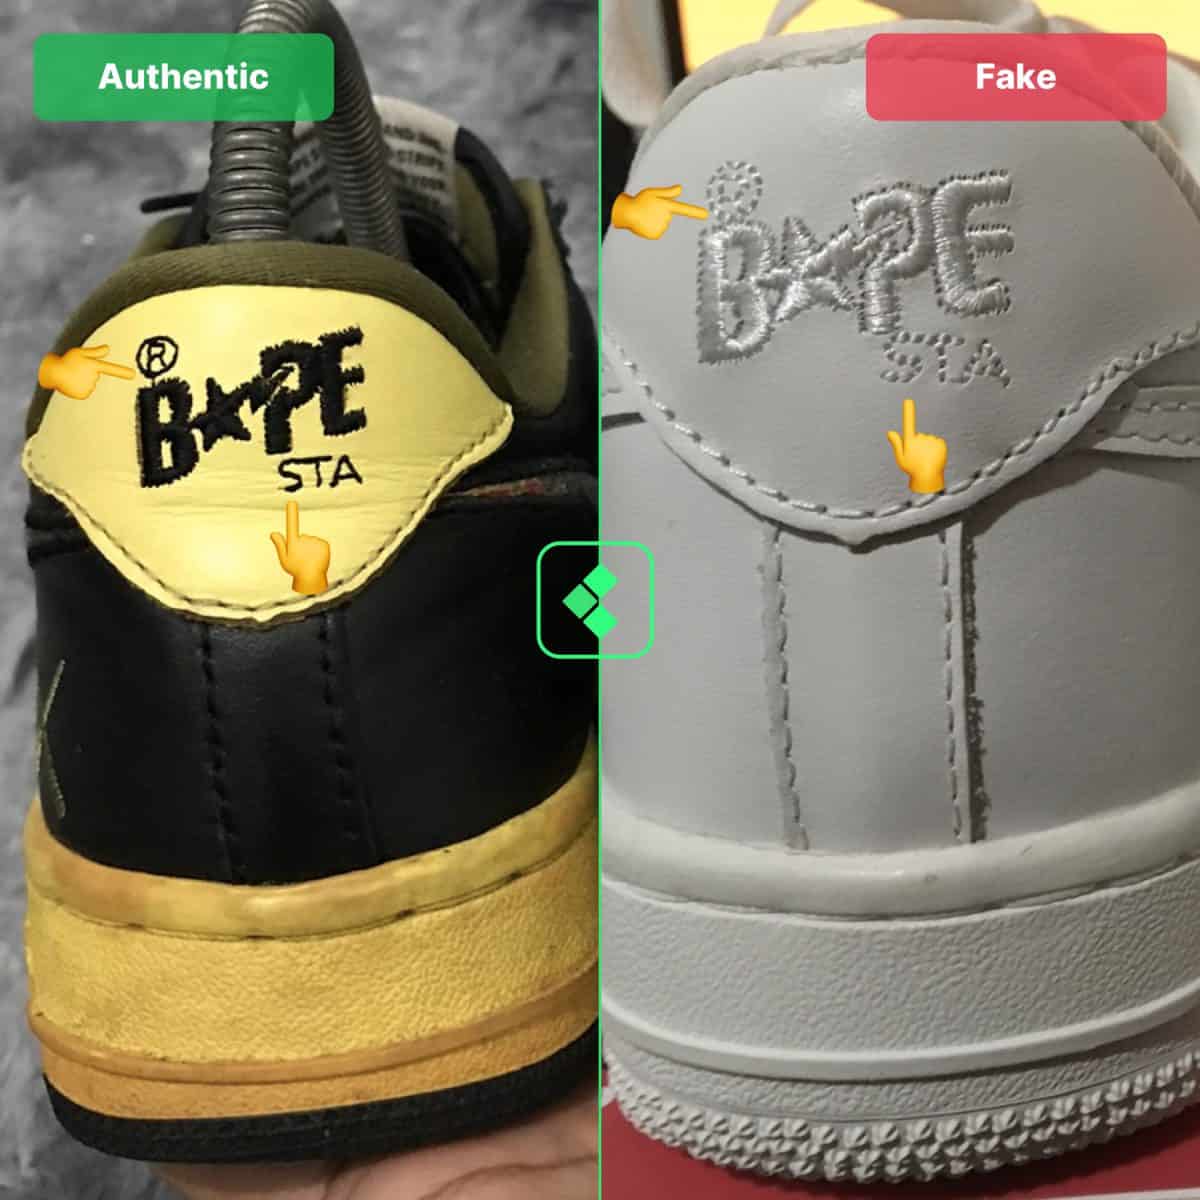 real vs fake bapesta shoes